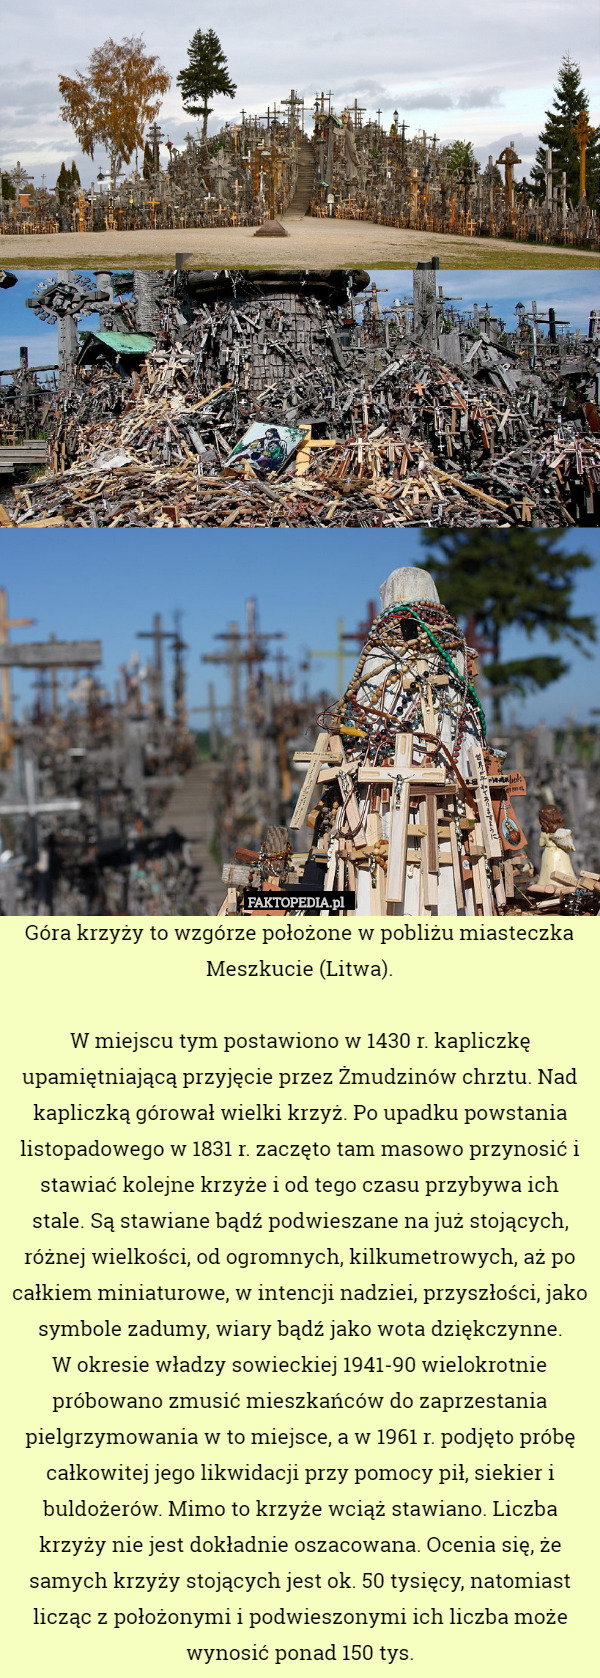 Góra krzyży to wzgórze położone w pobliżu miasteczka Meszkucie (Litwa).

W miejscu tym postawiono w 1430 r. kapliczkę upamiętniającą przyjęcie przez Żmudzinów chrztu. Nad kapliczką górował wielki krzyż. Po upadku powstania listopadowego w 1831 r. zaczęto tam masowo przynosić i stawiać kolejne krzyże i od tego czasu przybywa ich stale. Są stawiane bądź podwieszane na już stojących, różnej wielkości, od ogromnych, kilkumetrowych, aż po całkiem miniaturowe, w intencji nadziei, przyszłości, jako symbole zadumy, wiary bądź jako wota dziękczynne.
W okresie władzy sowieckiej 1941-90 wielokrotnie próbowano zmusić mieszkańców do zaprzestania pielgrzymowania w to miejsce, a w 1961 r. podjęto próbę całkowitej jego likwidacji przy pomocy pił, siekier i buldożerów. Mimo to krzyże wciąż stawiano. Liczba krzyży nie jest dokładnie oszacowana. Ocenia się, że samych krzyży stojących jest ok. 50 tysięcy, natomiast licząc z położonymi i podwieszonymi ich liczba może wynosić ponad 150 tys. 